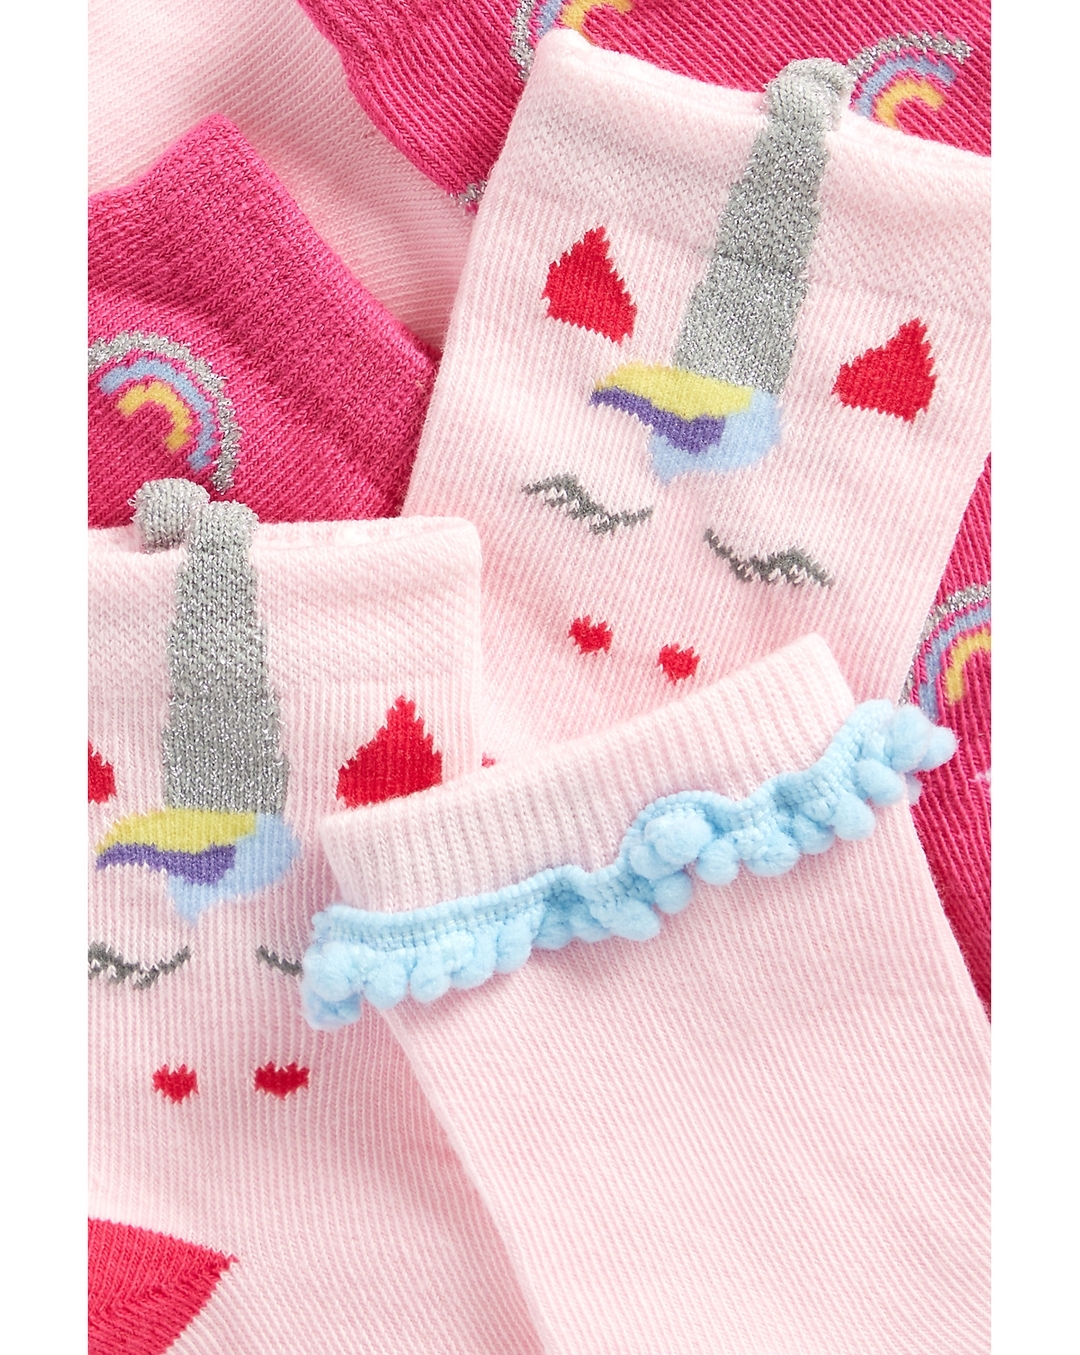 Buy Girls socks glitter unicorn design - Pack of 3 - Pink Online